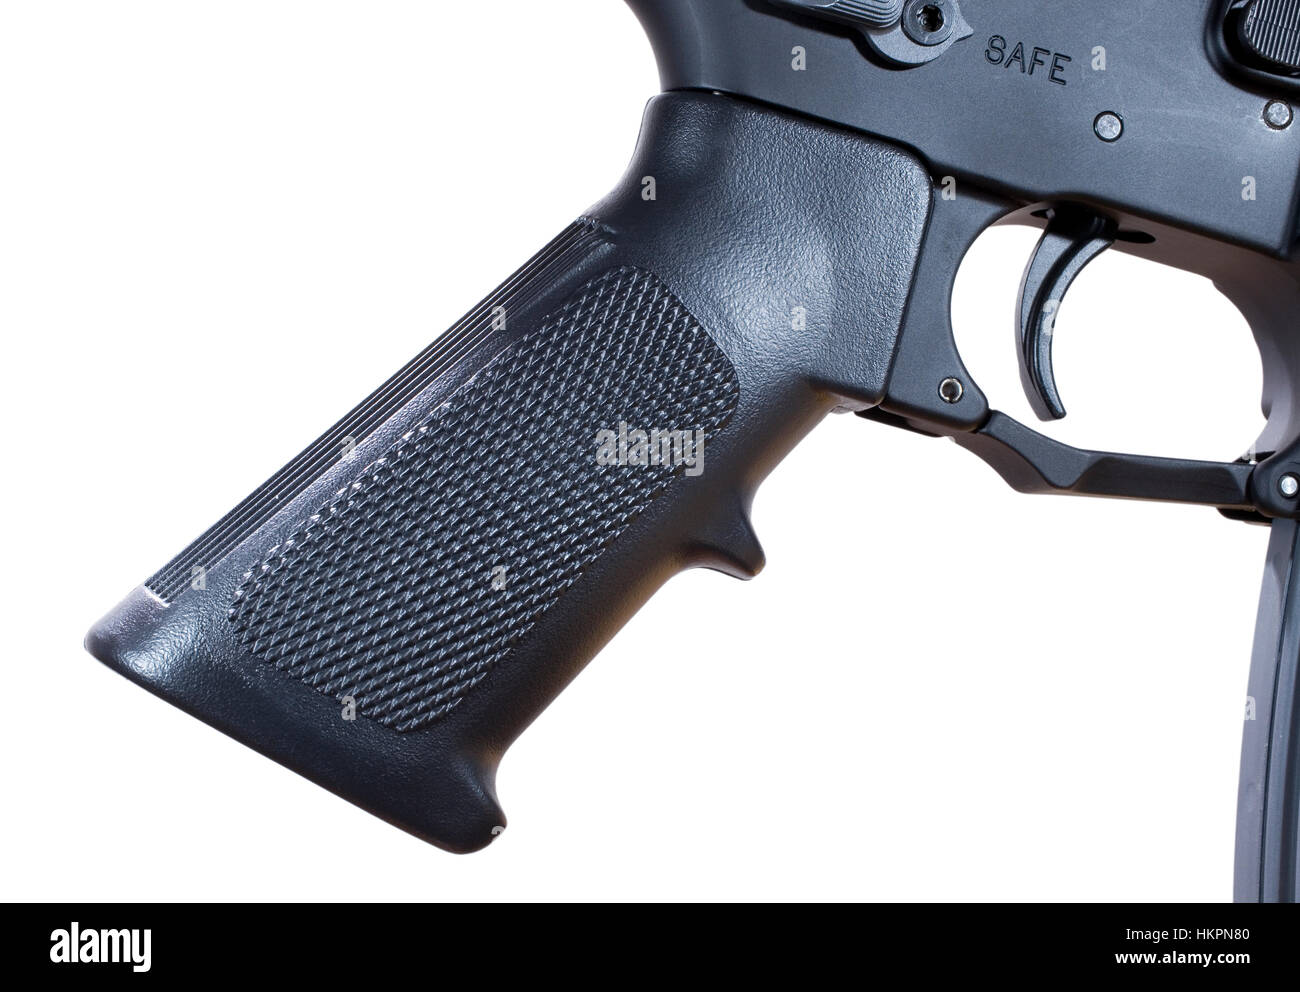 Poignée pistolet en polymère qui se trouve sur un AR 15 semi-automatique Banque D'Images